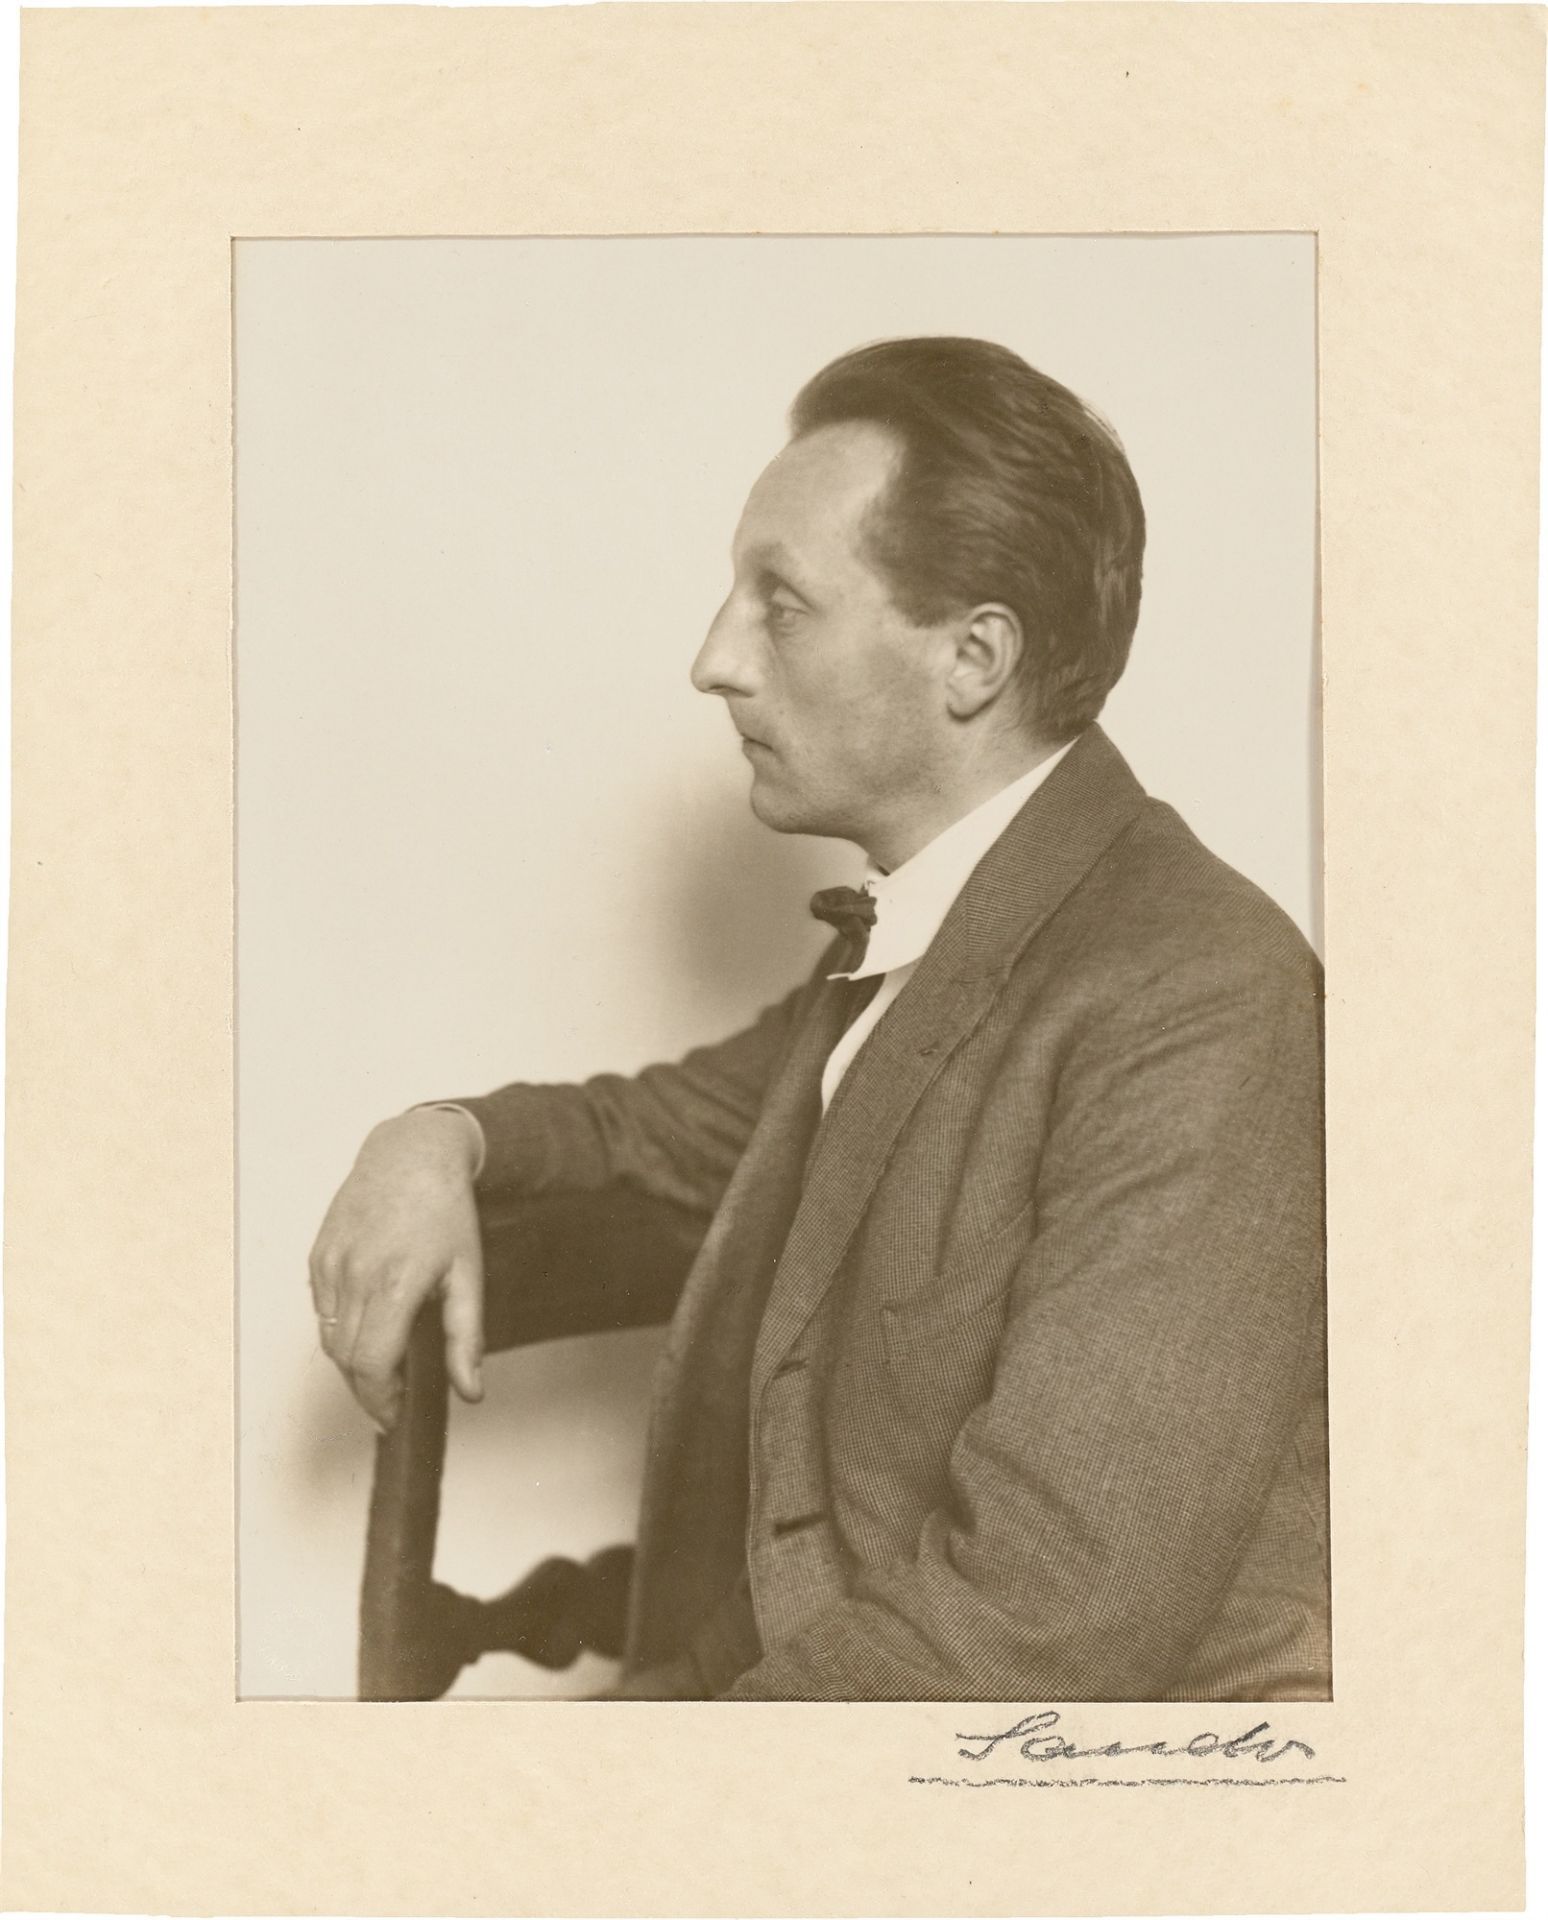 August Sander. Maler [Franz M. Jansen]. 1924/25